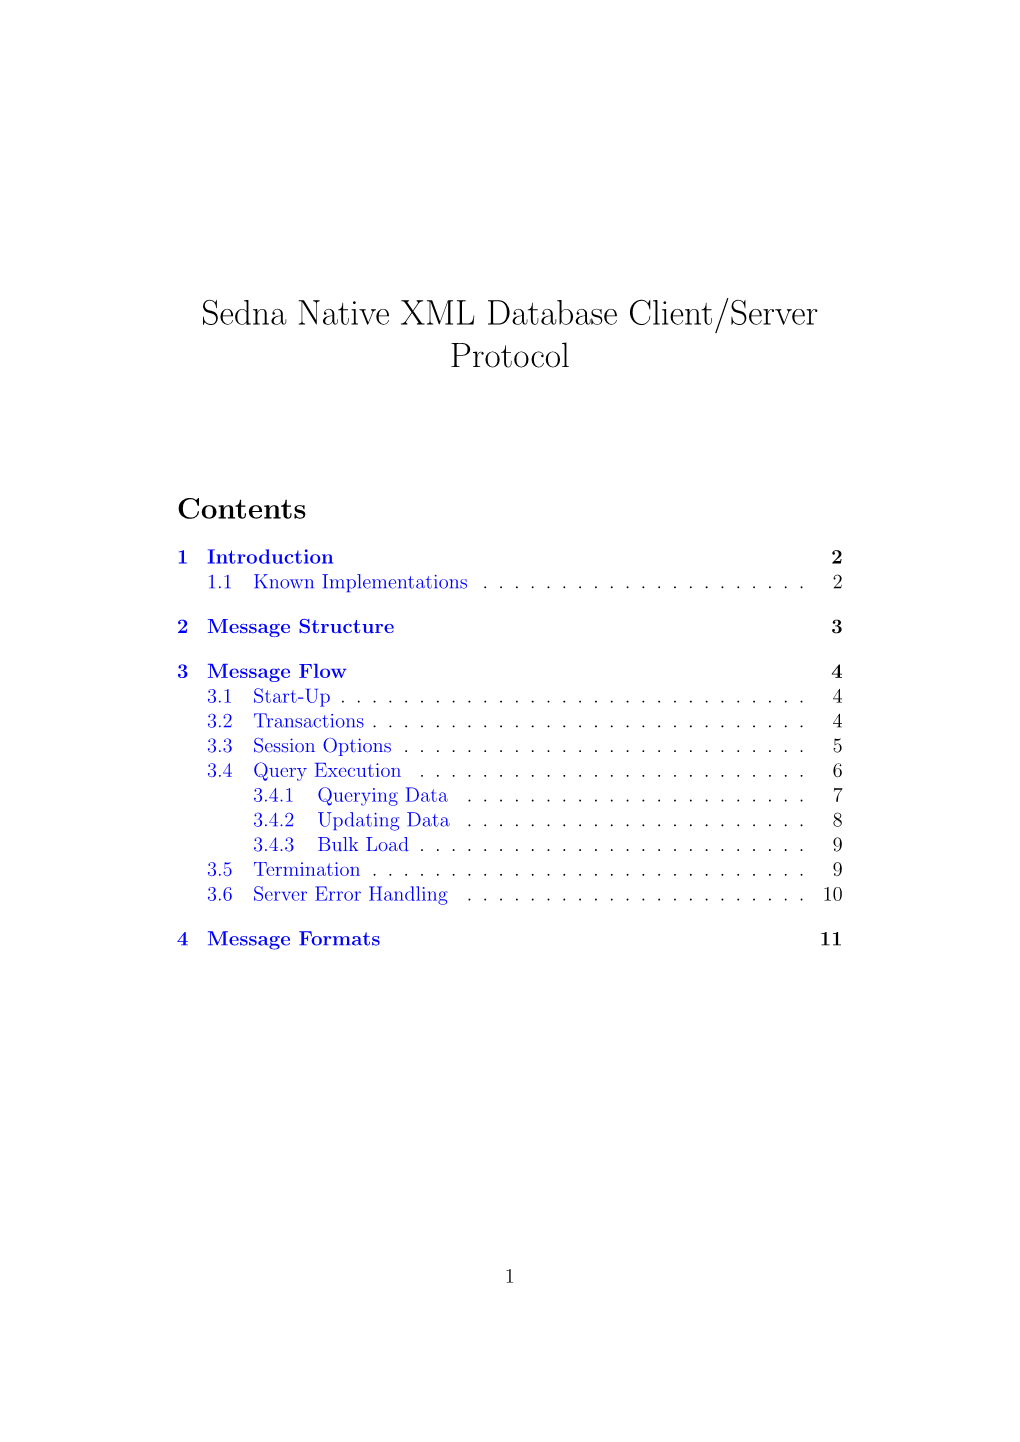 Sedna Native XML Database Client/Server Protocol